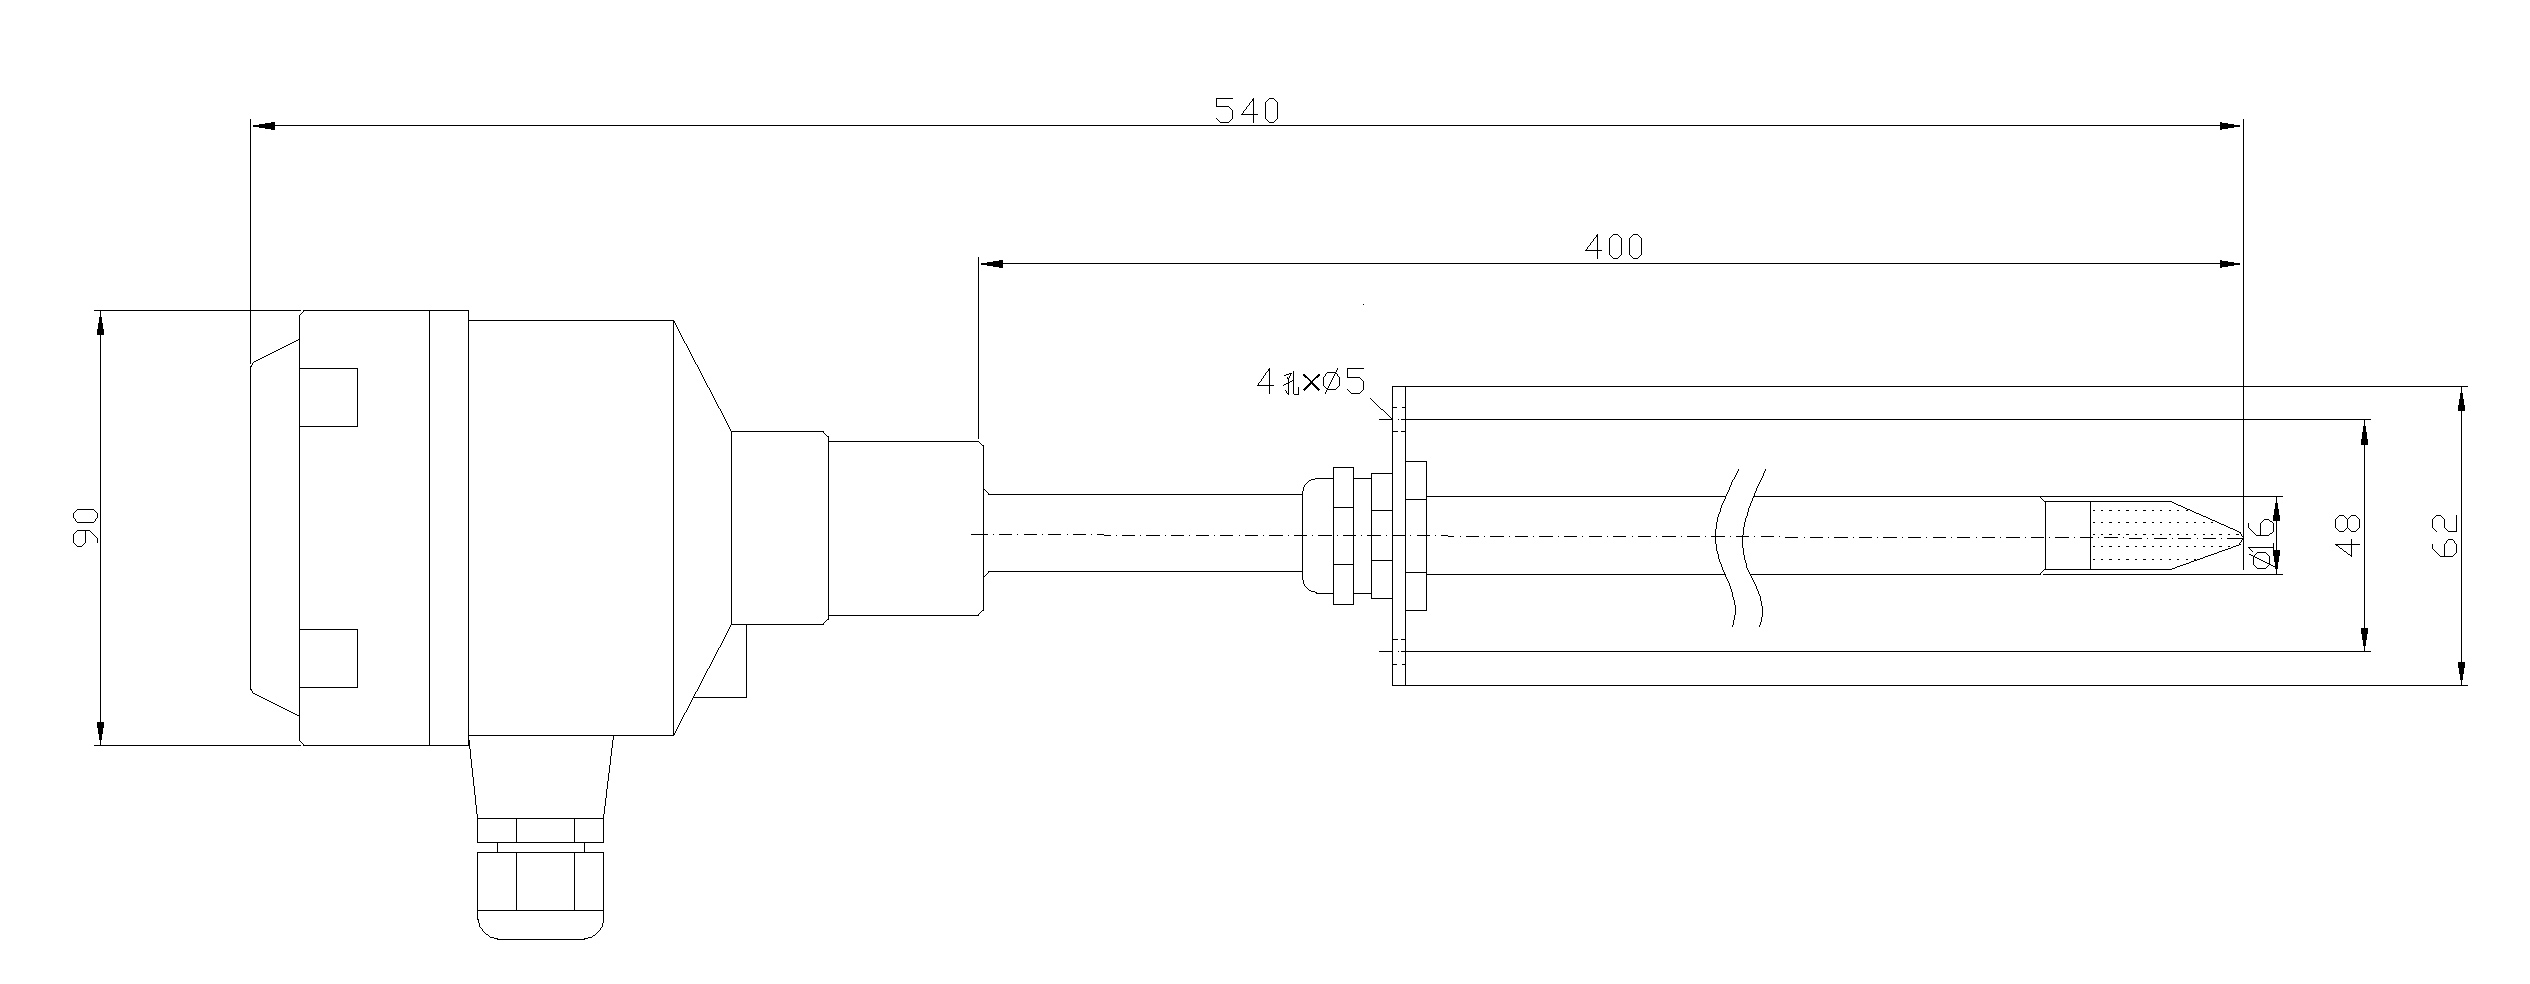 HT400-F hgih Temperatur a Fiichtegkeet Sensor